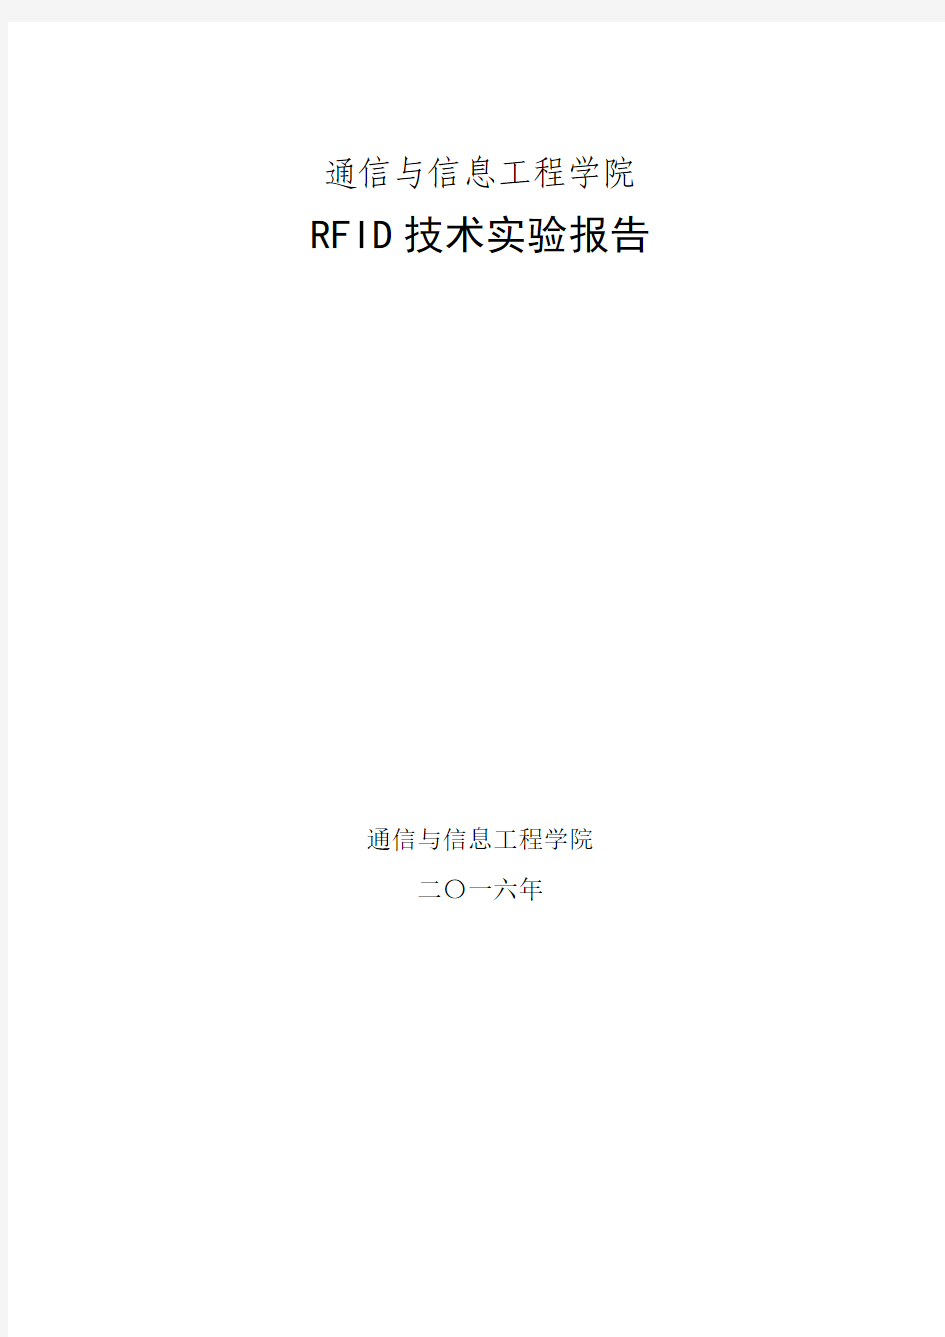 RFID实验报告